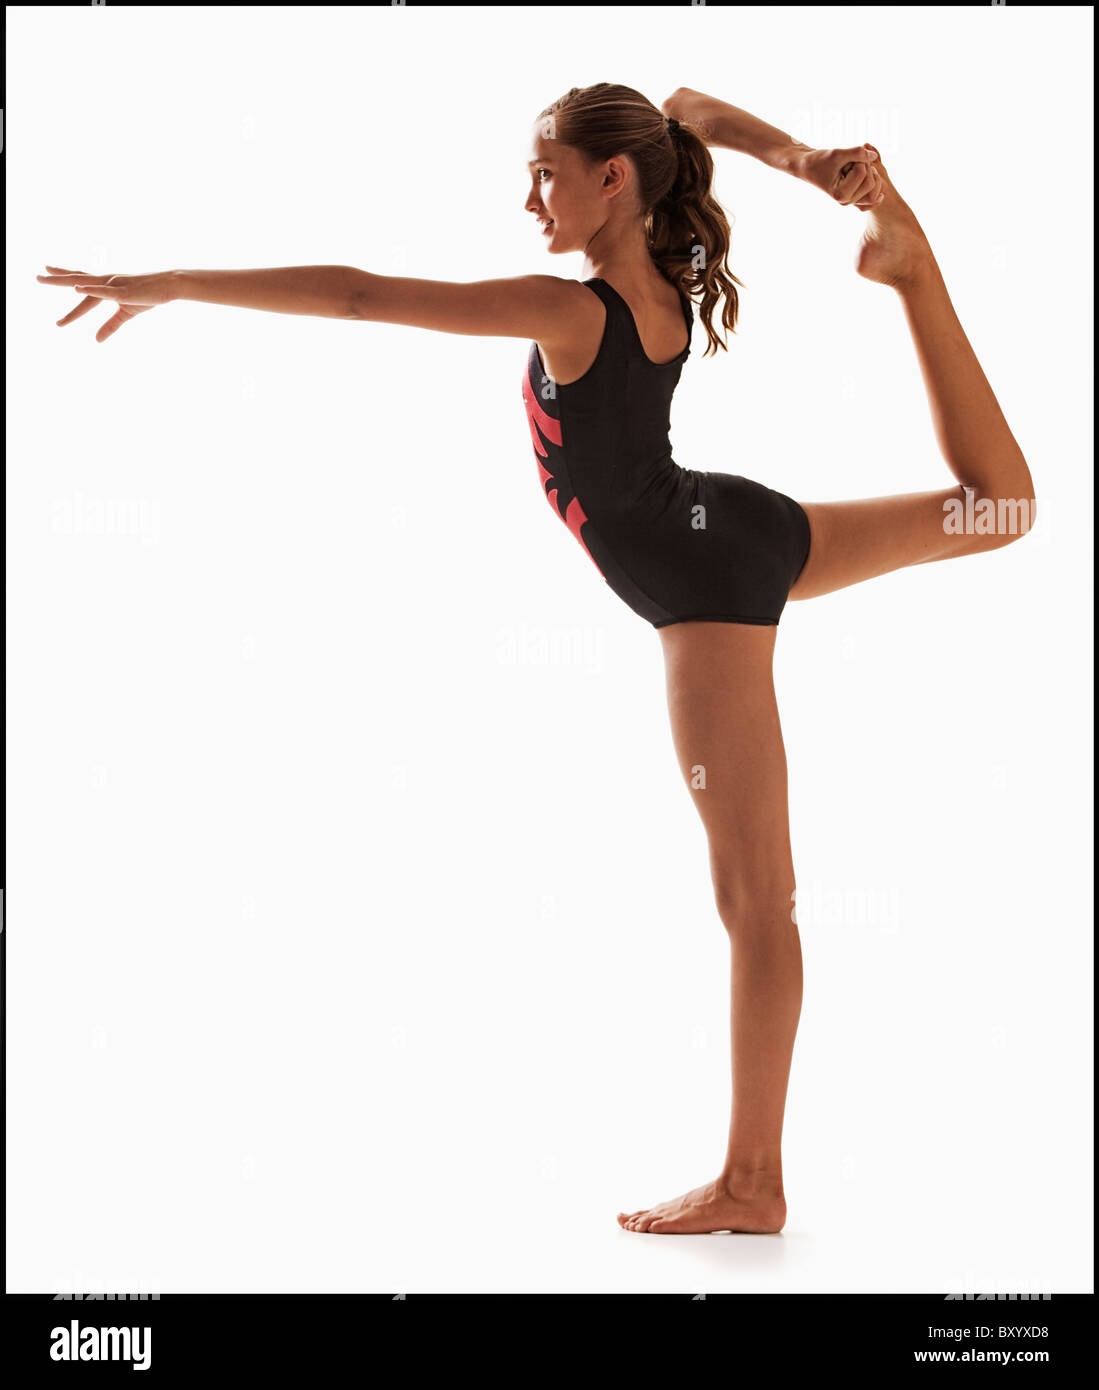 Female gymnast balancing on one leg Stock Photo